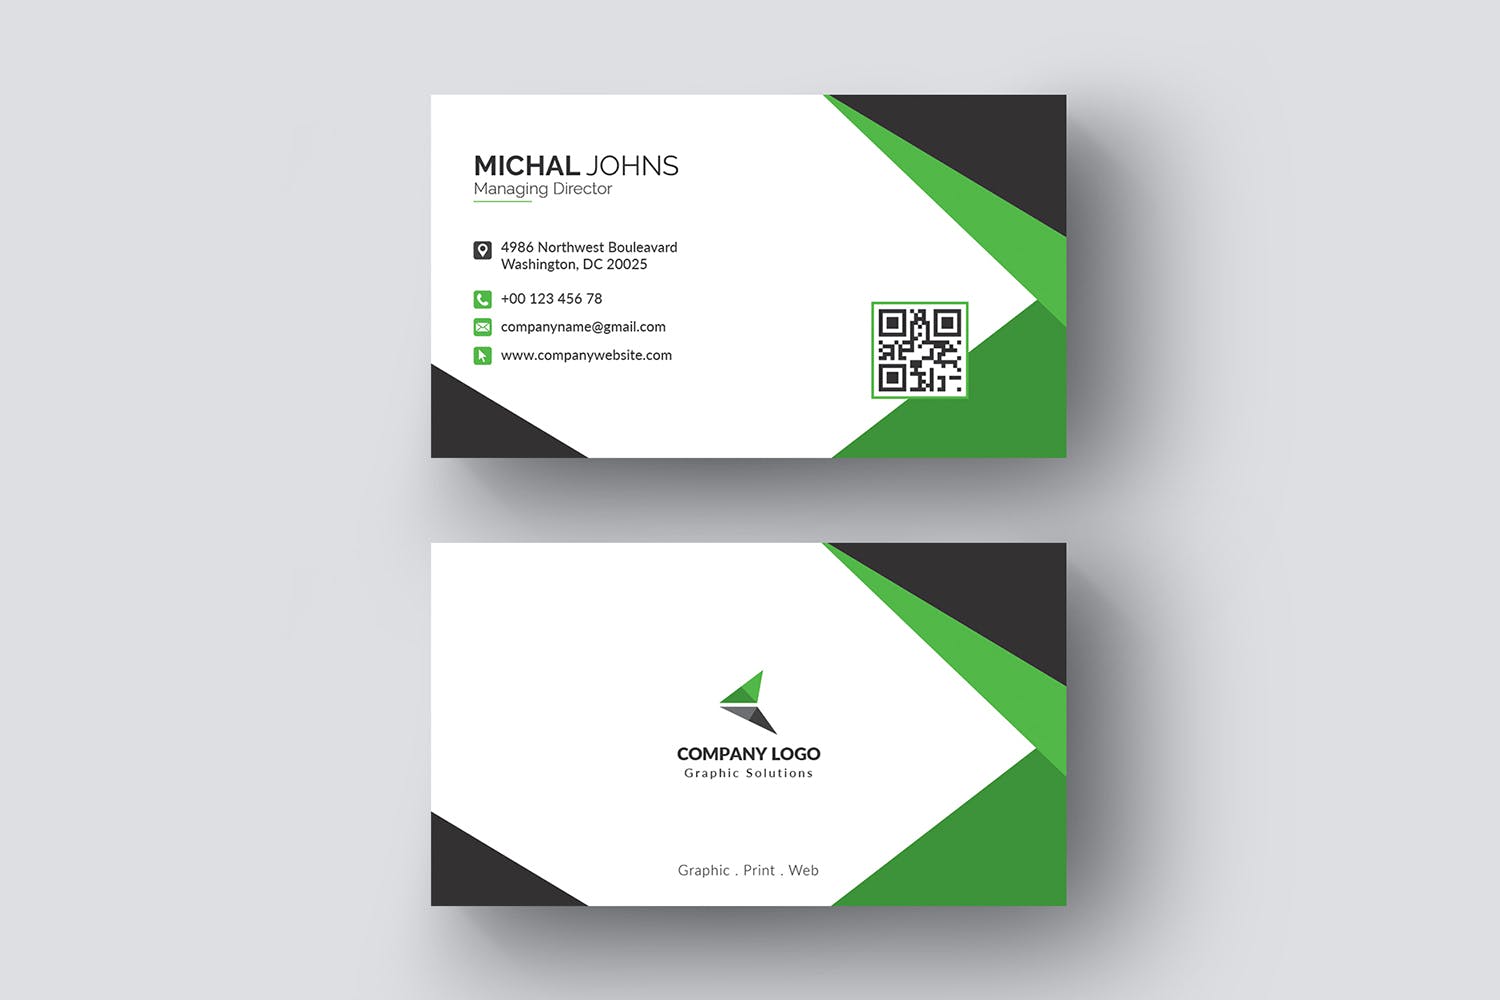 现代创意设计风格企业名片模板 Business Card插图2